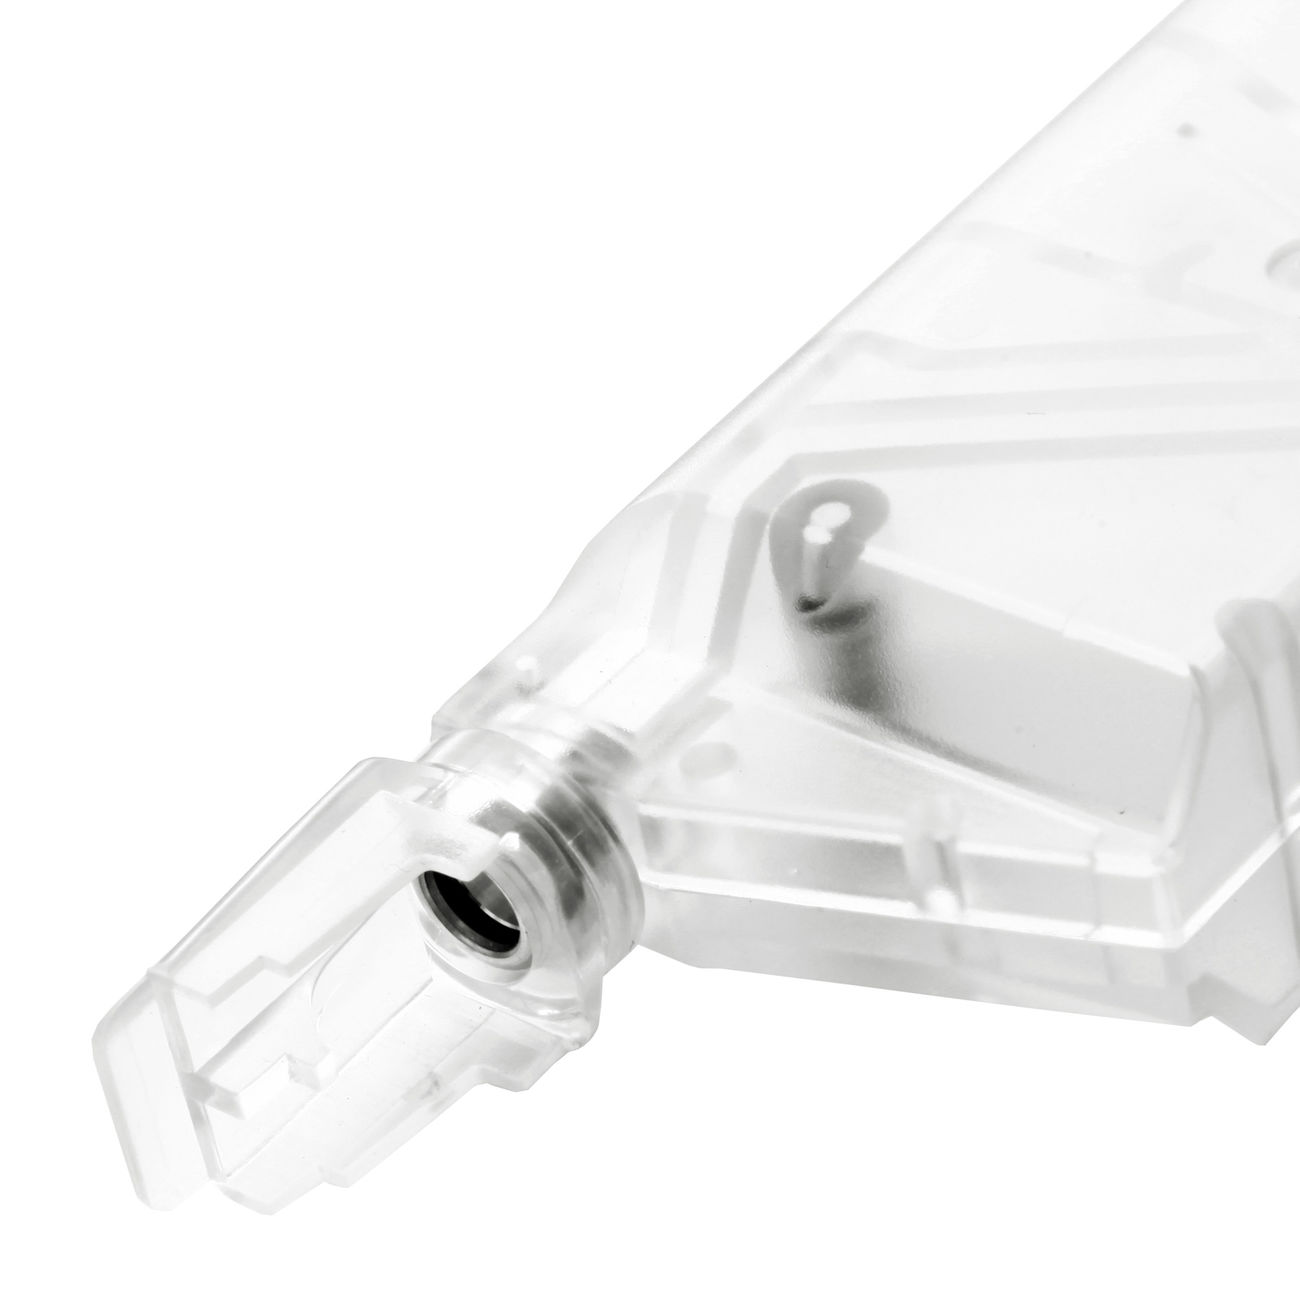 6mmProShop SMG Magazin Style Speedloader für 350 BBs weiss-transparent Bild 2